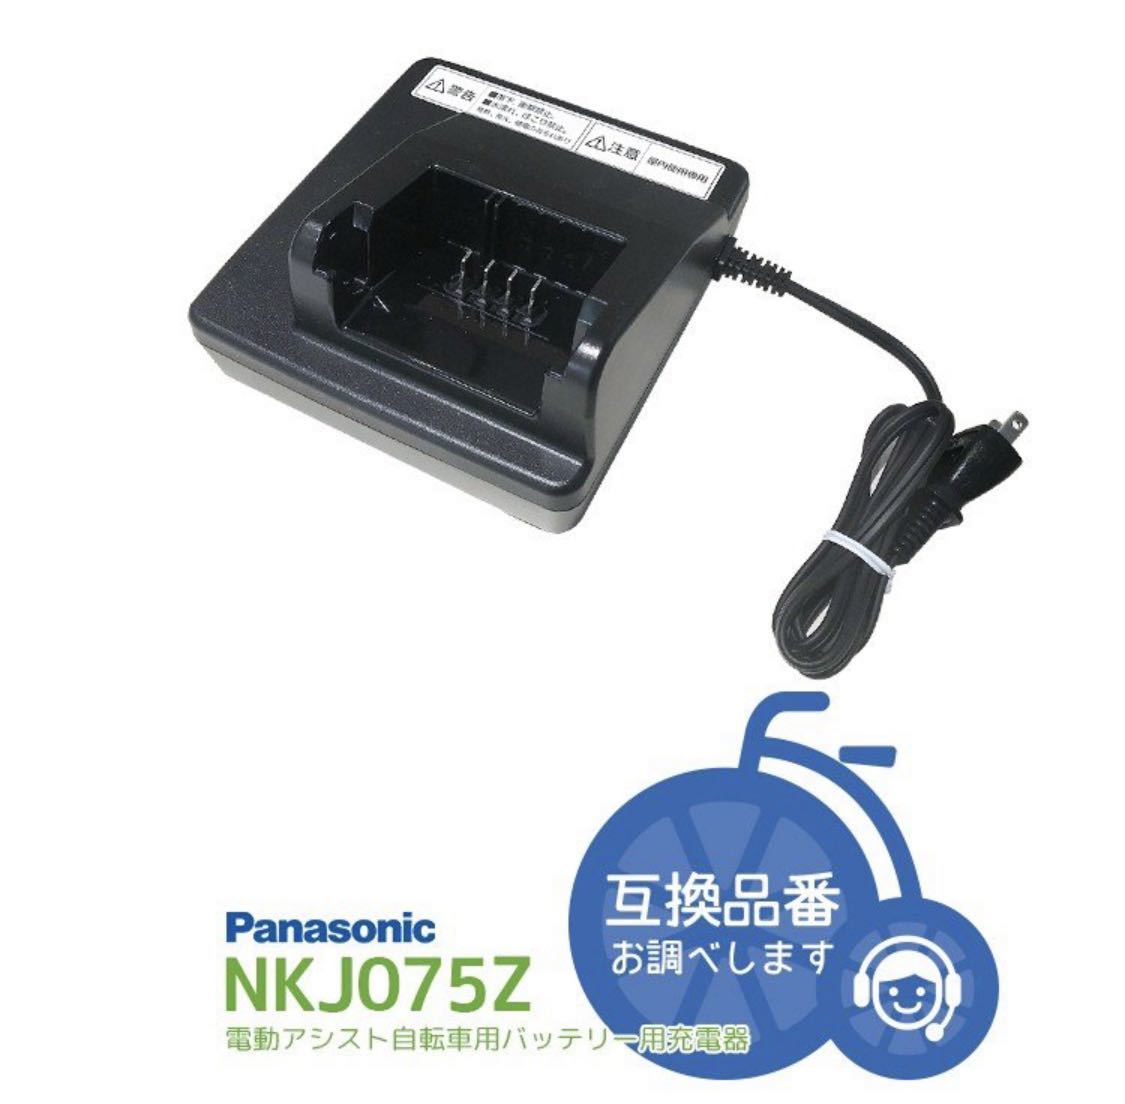 魅力的な価格 【新品】パナソニック NKJ075Z 充電器 リチウムイオン